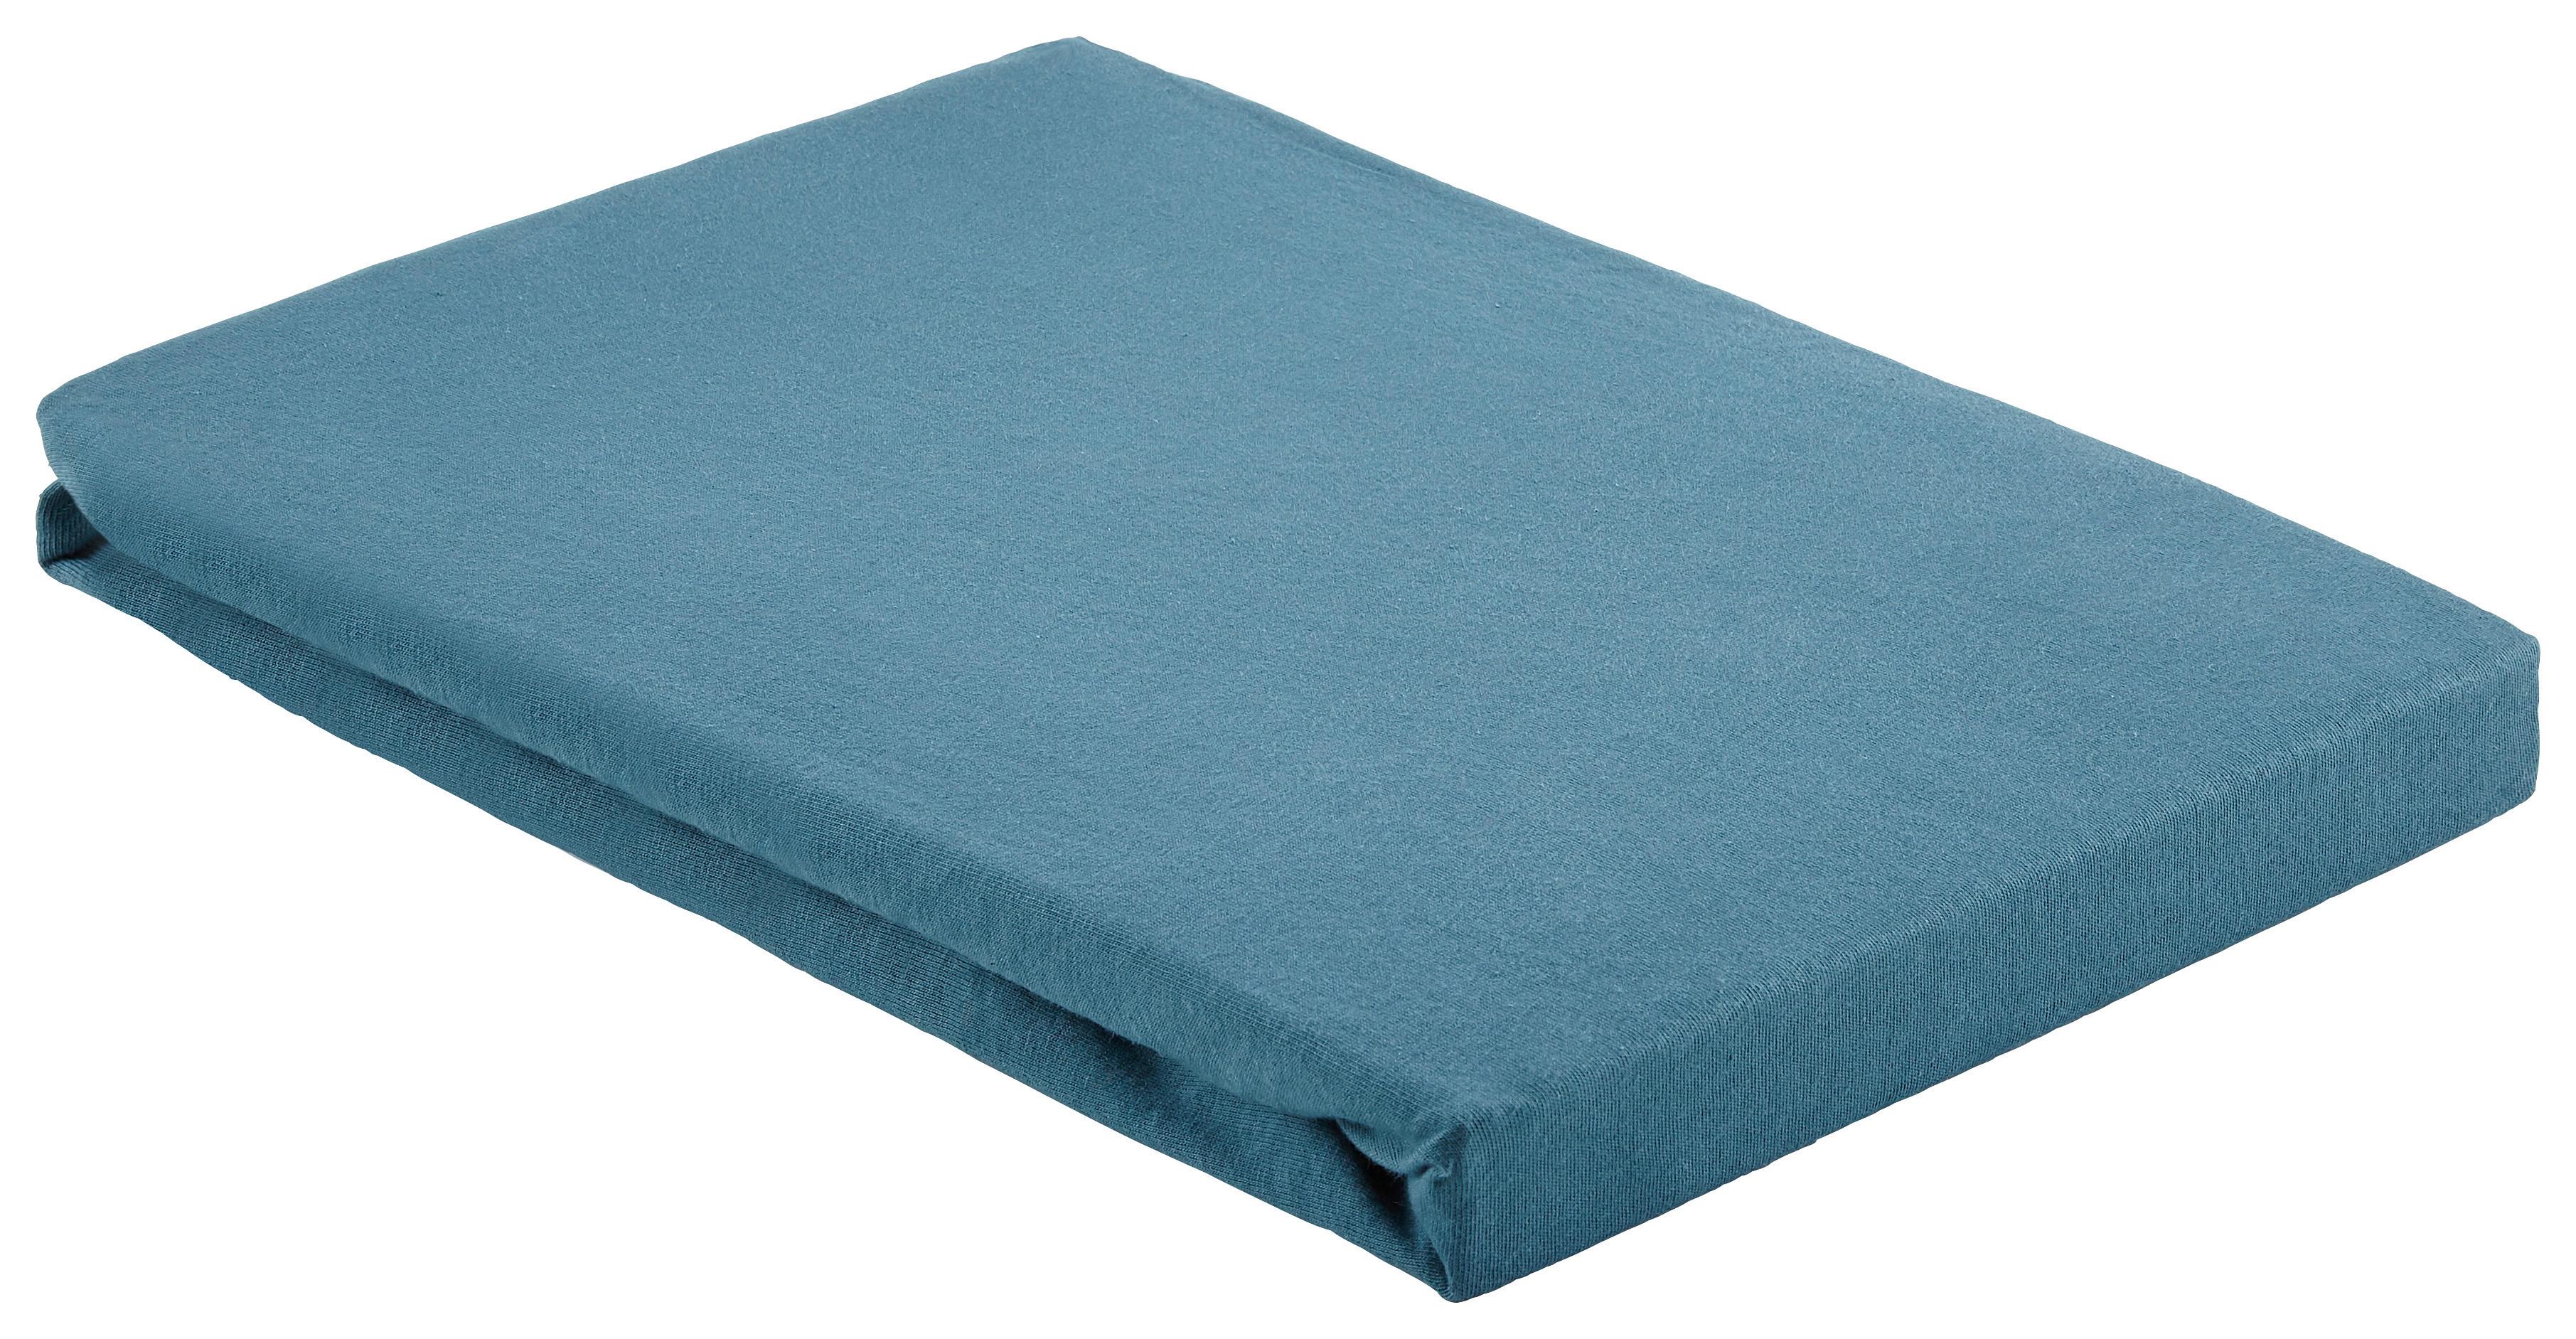 Cearșaf cu elastic Basic - albastru, textil (100/200cm) - Modern Living